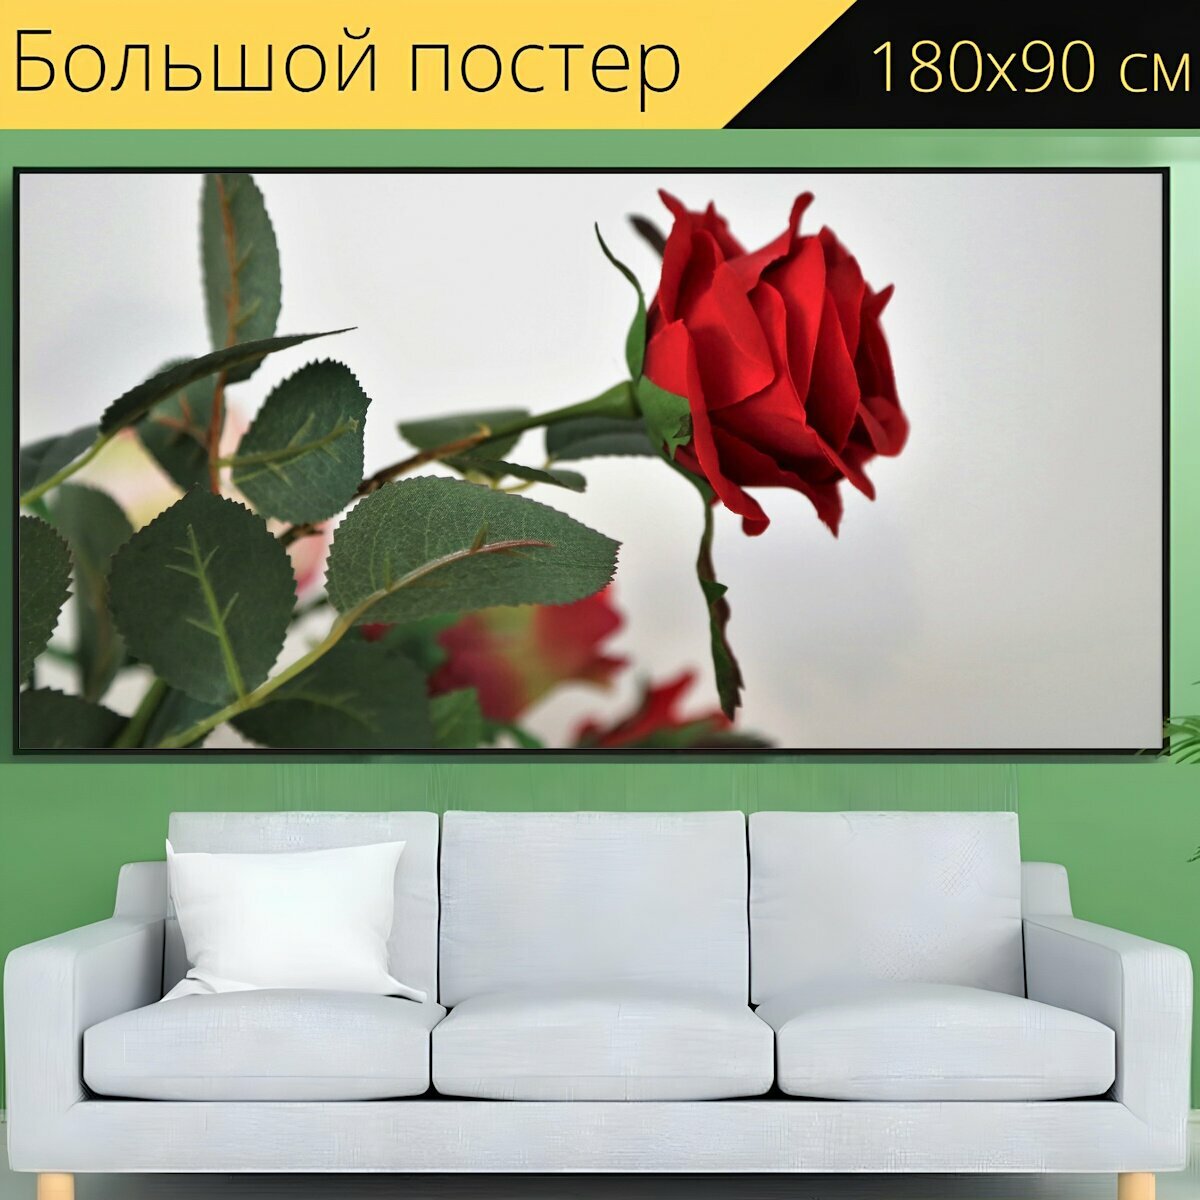 Большой постер "Искусственный красная роза, цветок, украшение" 180 x 90 см. для интерьера